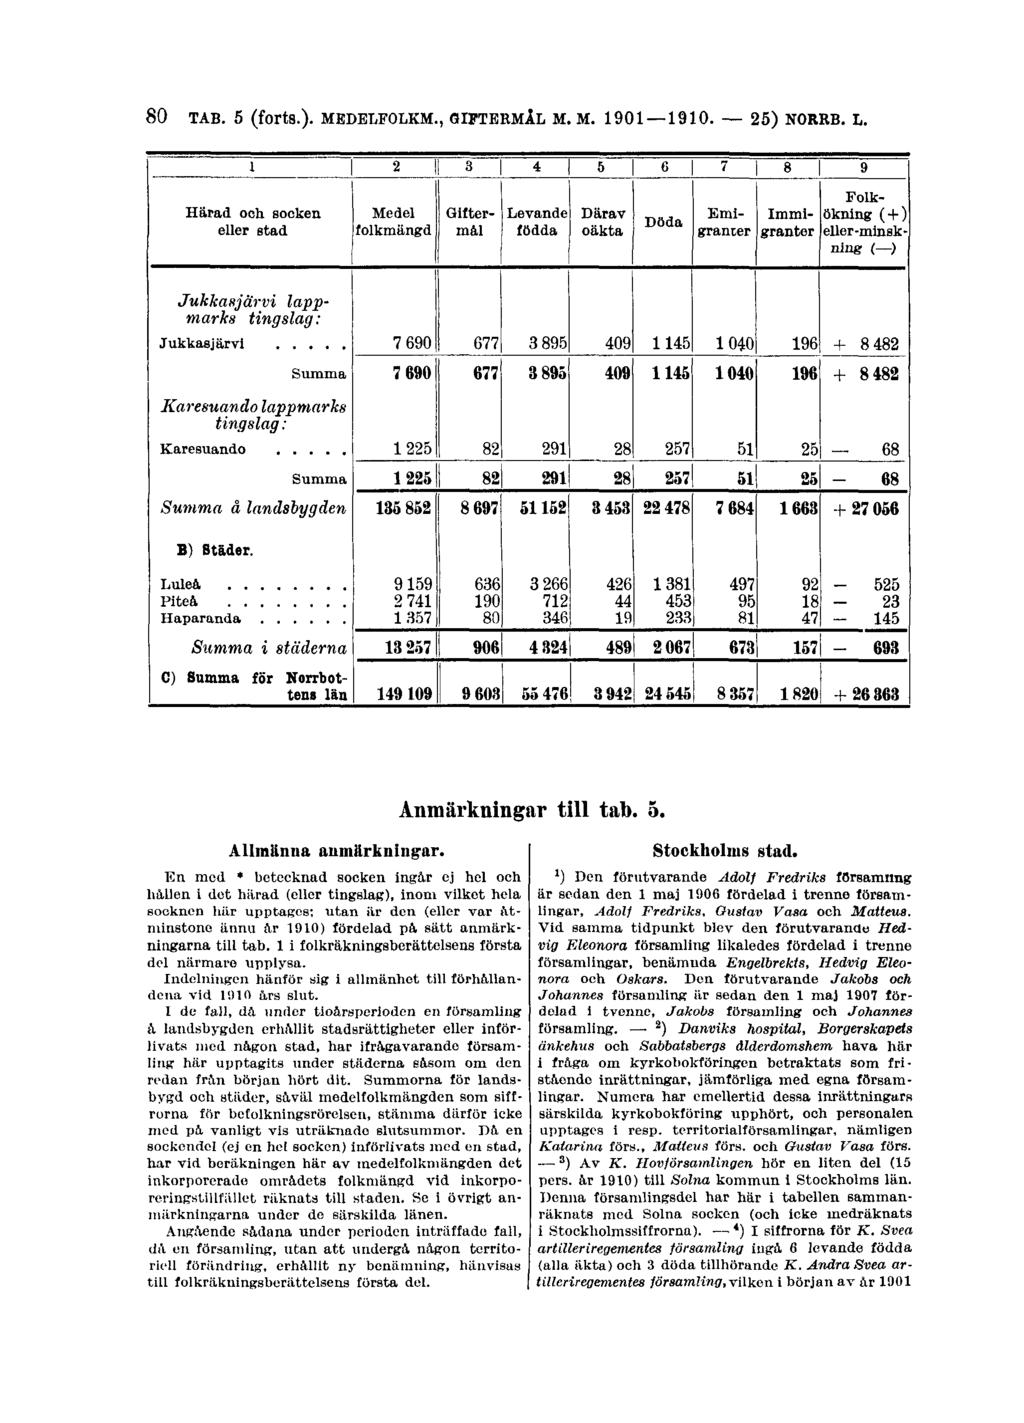 80 TAB. 5 (forts.)- MEDELFOLKM., GIFTERMÅL M. M. 1901 1910. 25) NORRB. L. Allmänna anmärkningar.